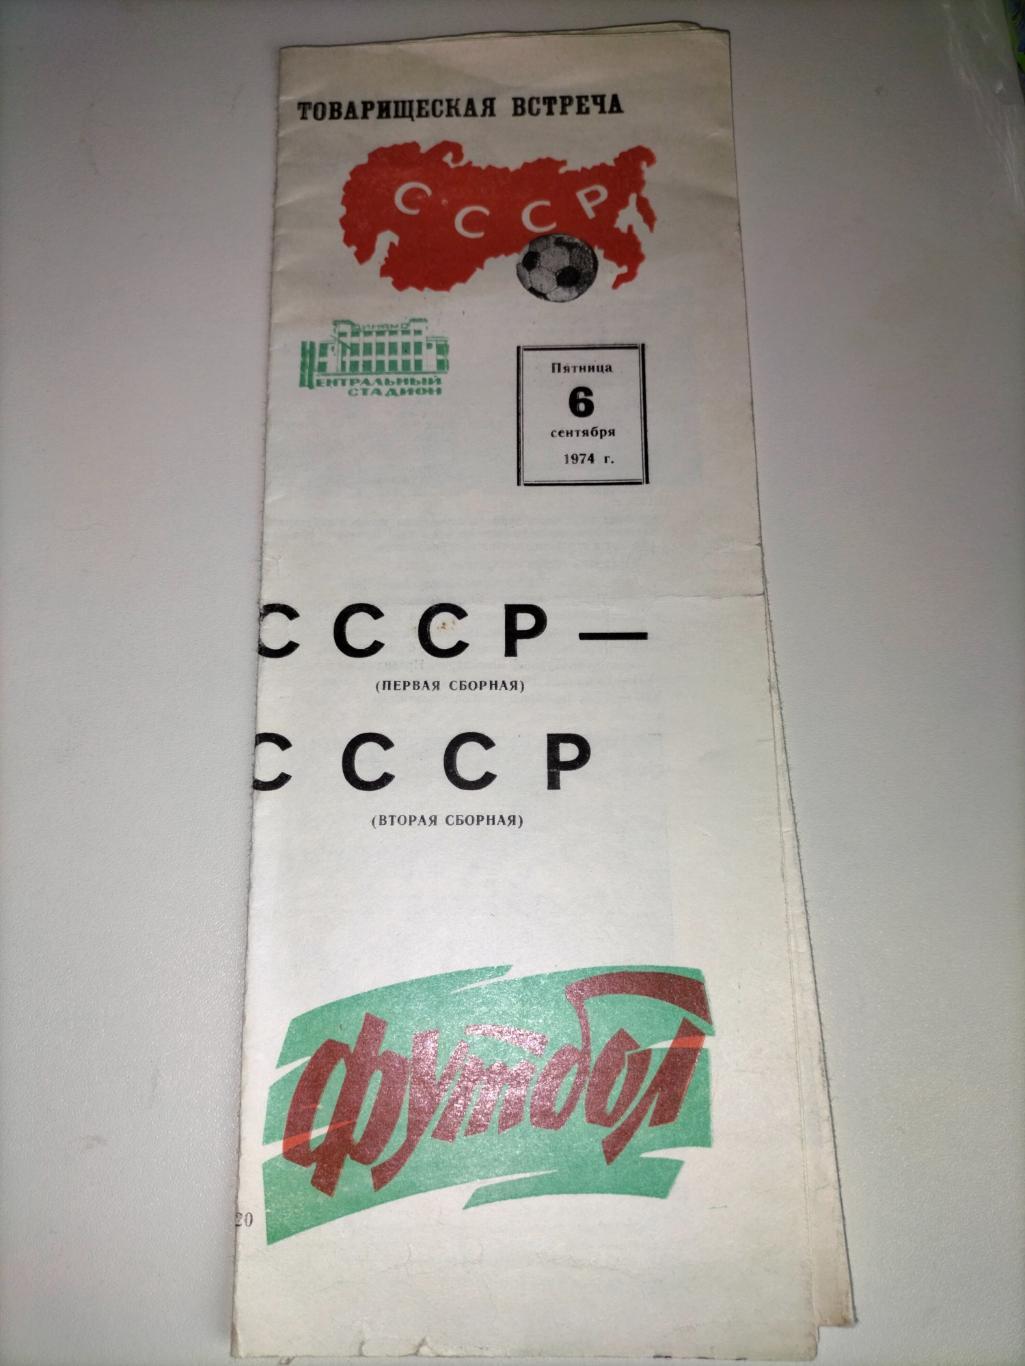 Сборная СССР первая - Сборная СССР вторая 1974 2